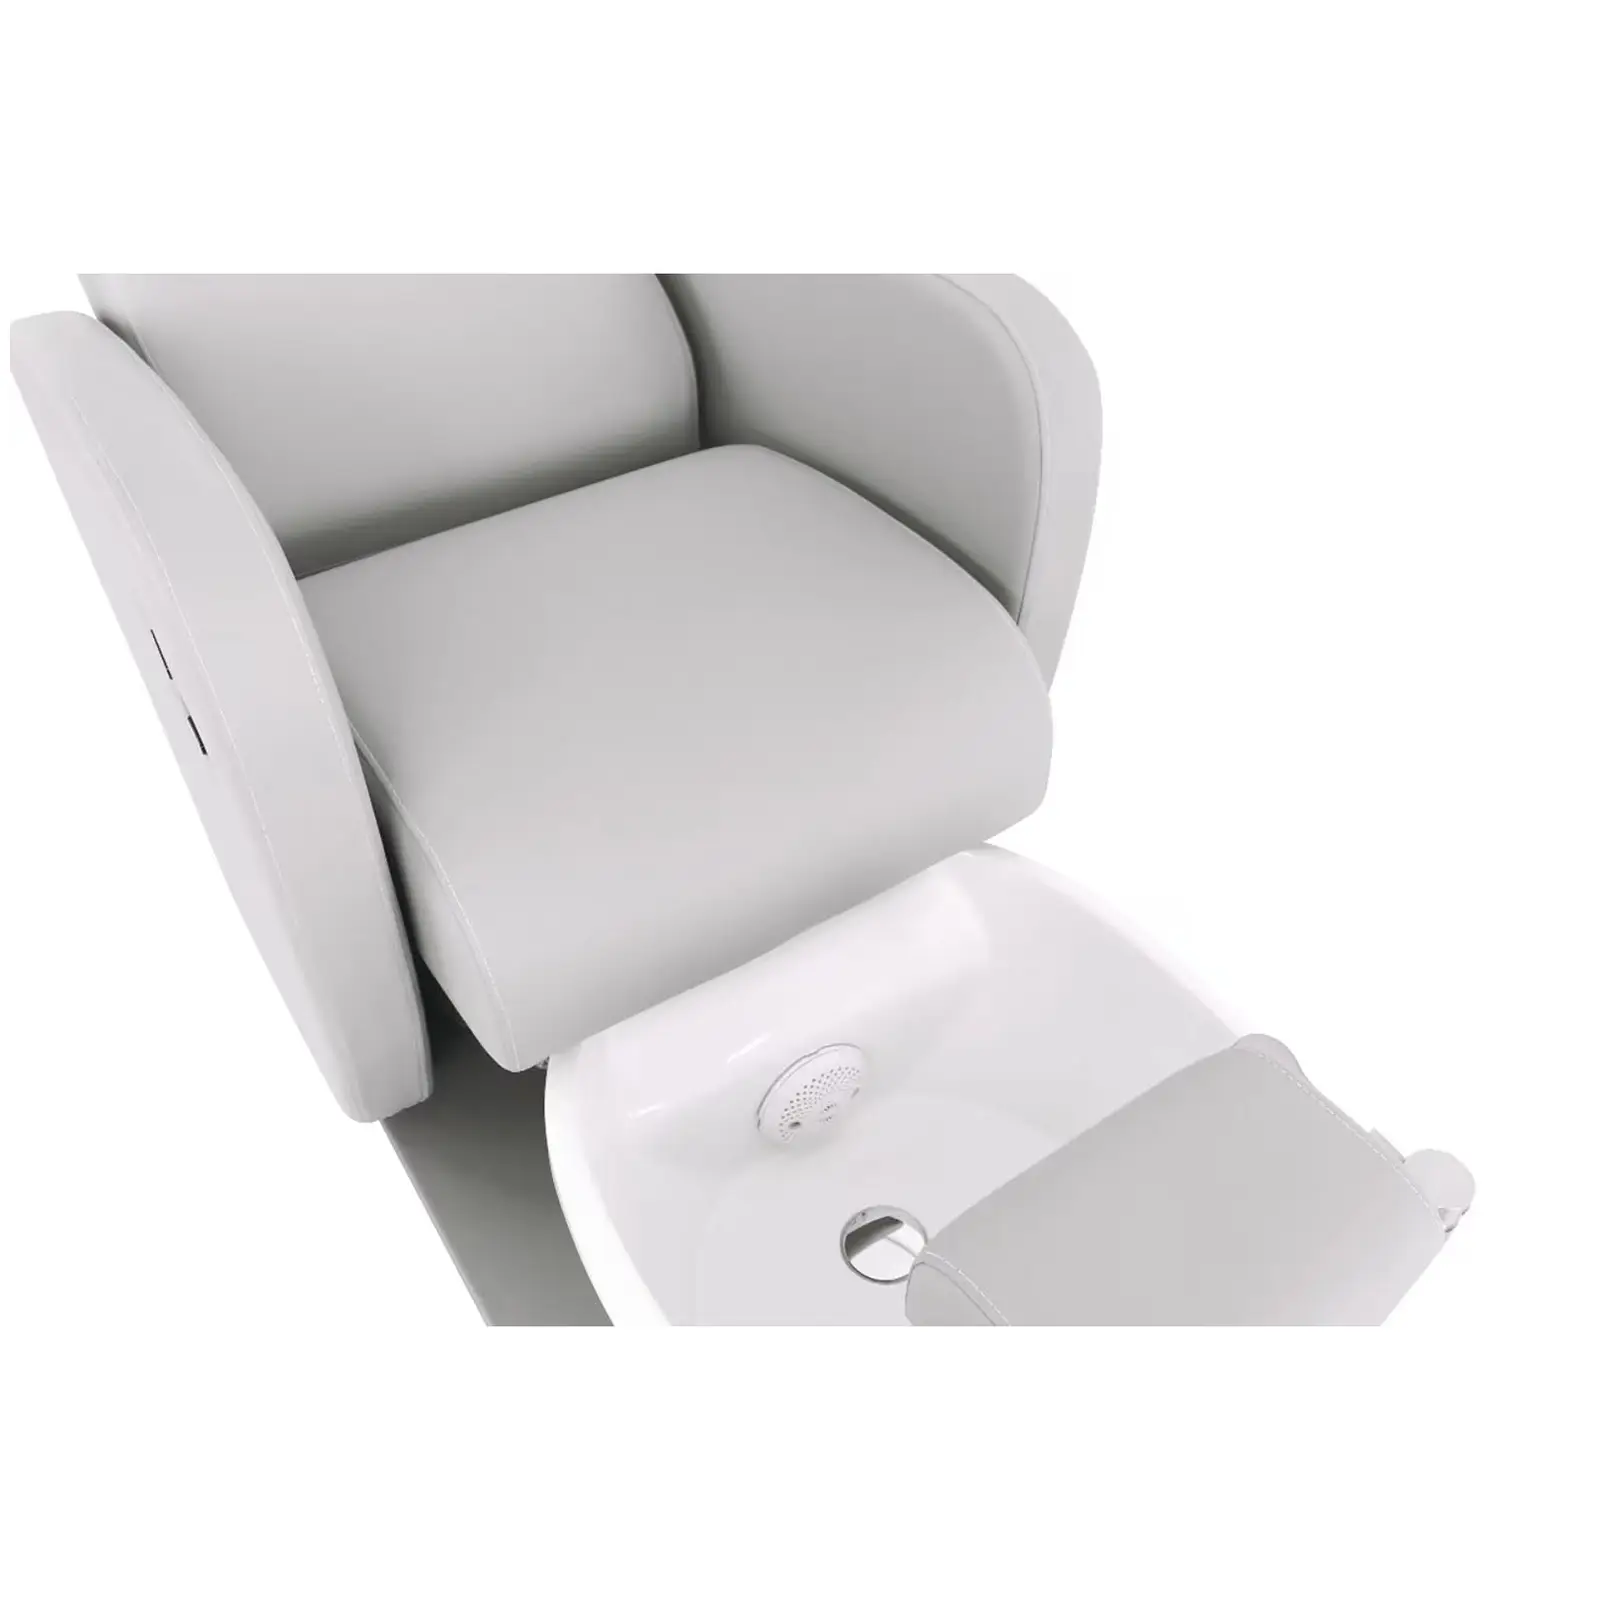 Električna stolica za pedikuru - s kadicom za noge - 105 W - 200 kg - siva